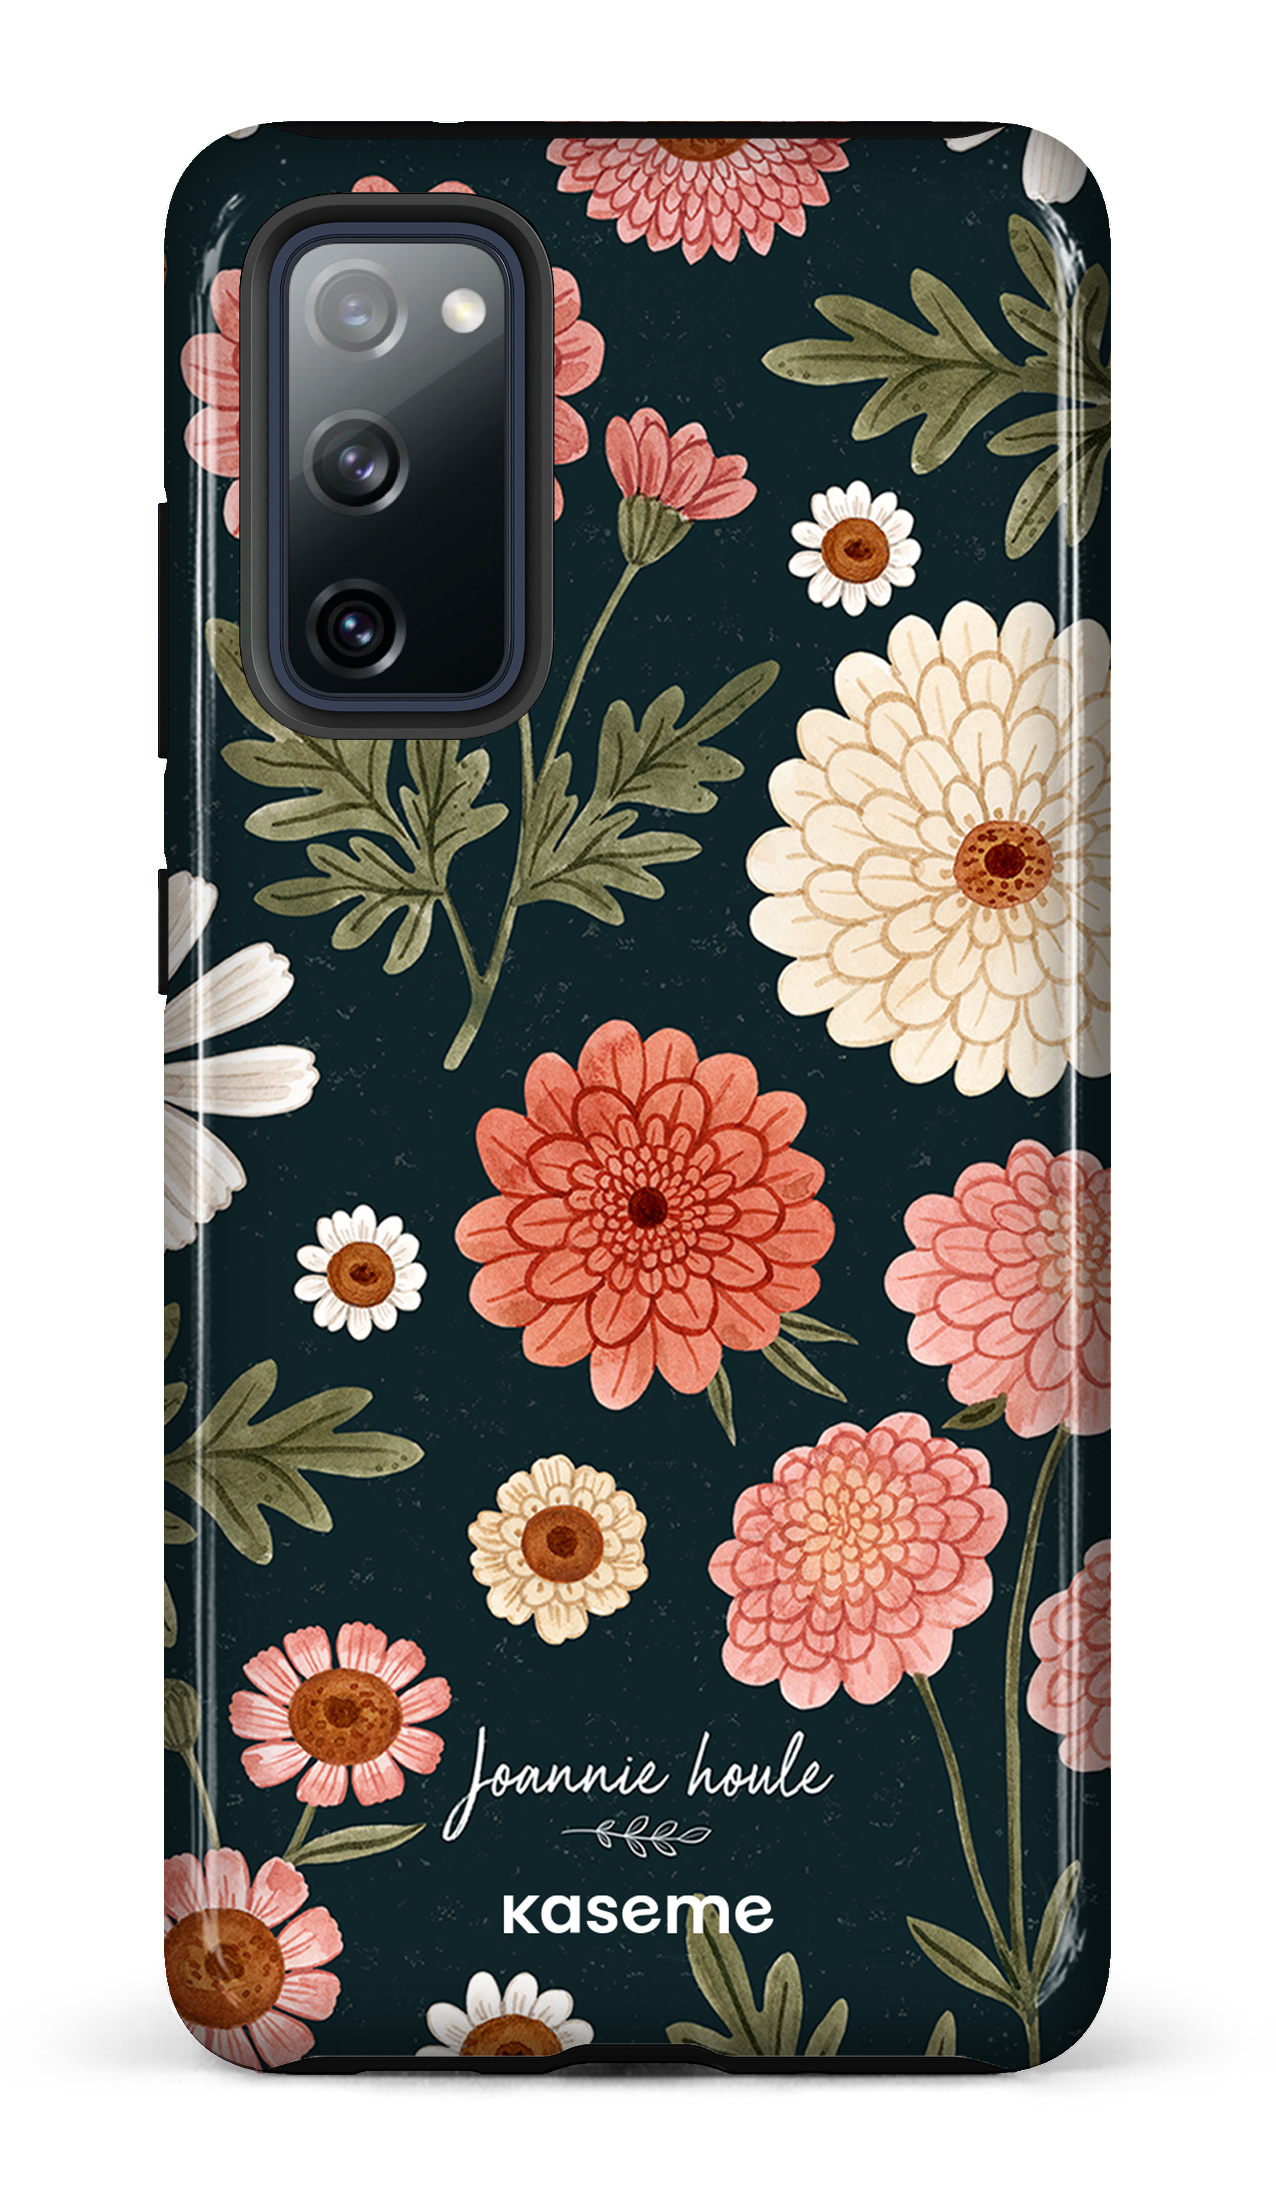 Chrysanthemums by Joannie Houle - Galaxy S20 FE